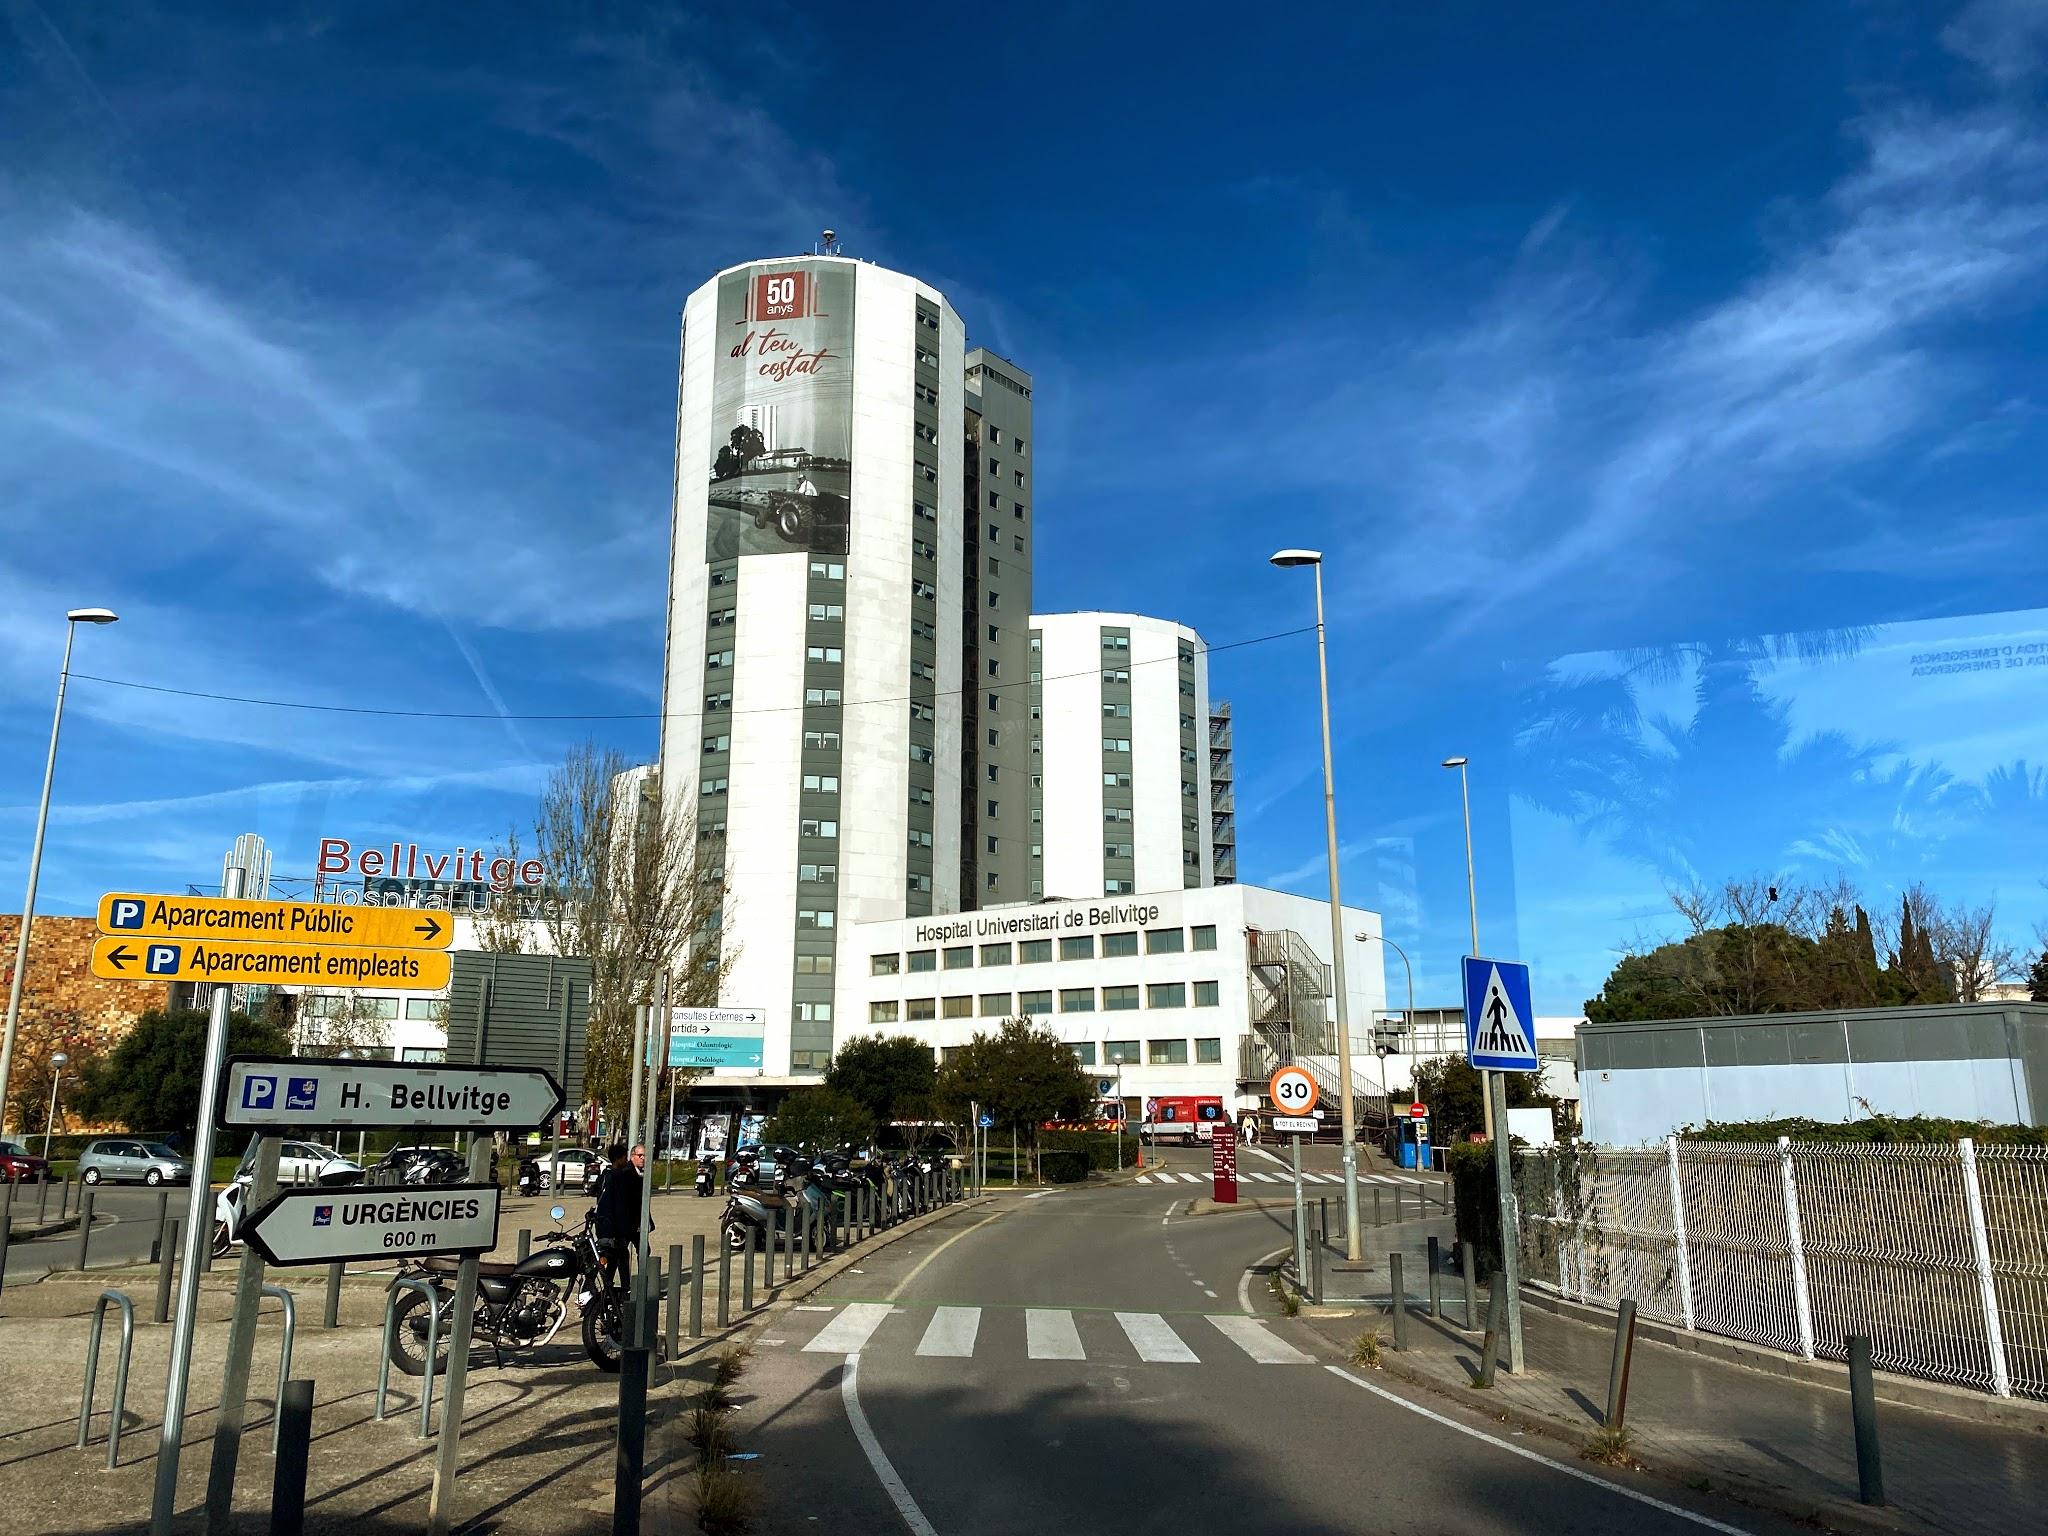 L'Hospitalet de Llobregat photo